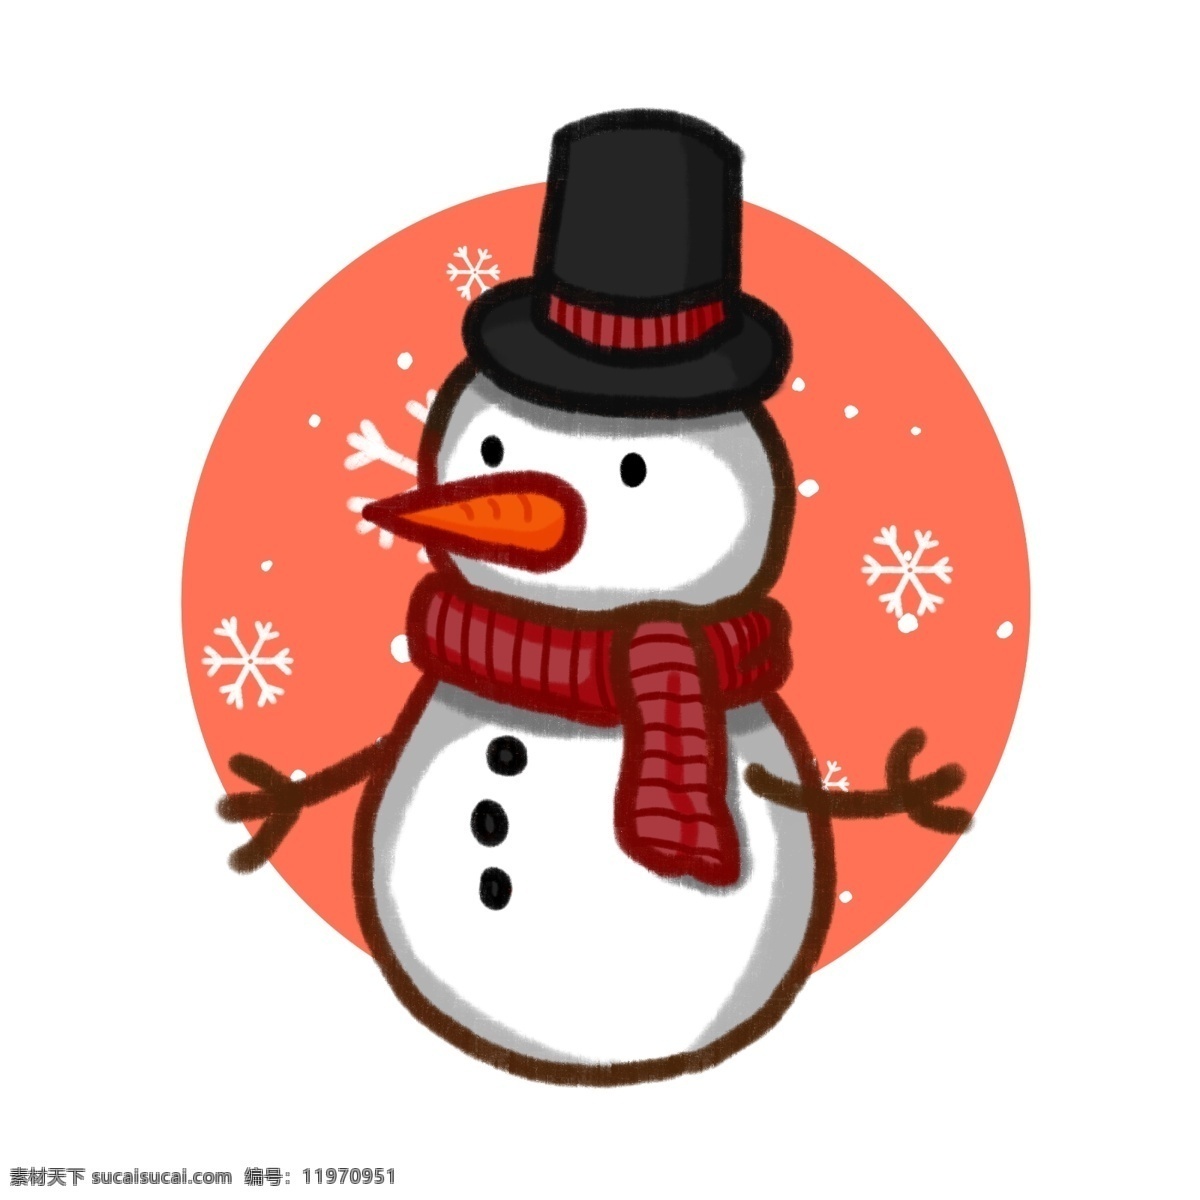 原创 手绘 风 插画 圣诞节 冬天 卡通 雪人 元素 可爱 雪花 手绘风 板绘 雪球 帽子 围巾